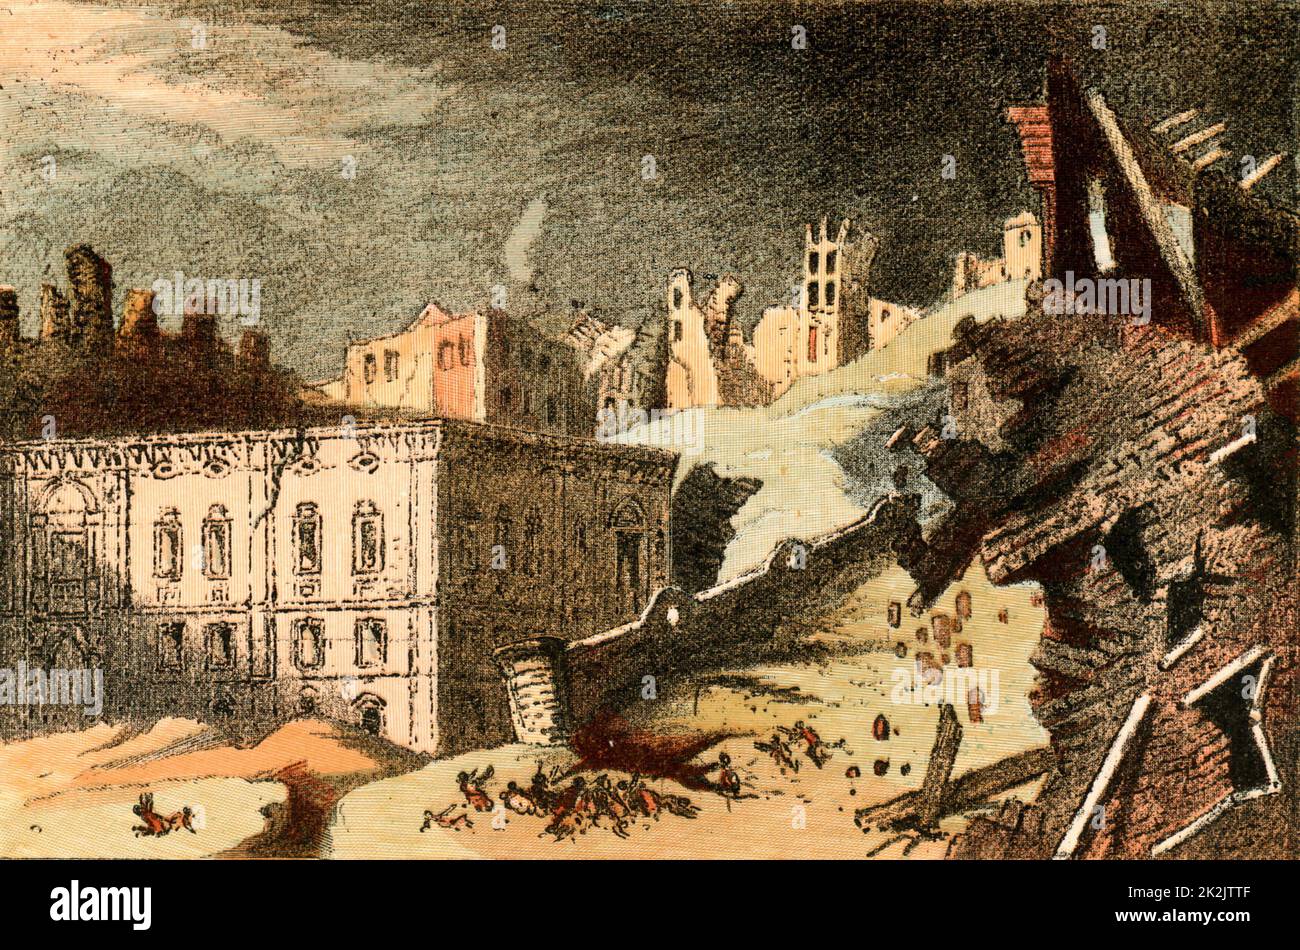 Das große Erdbeben von Lissabon vom 1755. November, das einen Großteil der Stadt zerstörte und Tausende von Einwohnern tötete. Auf das Erdbeben folgte eine Flutwelle, die durch einen Brand, der ausbrach, weiter beschädigt wurde. Viele Wochen nach dem Hauptereignis wurden Nachbeben gefühlt. Dieses historische Ereignis wird im philosophischen Roman "Candide" von Voltaire (1759) beschrieben. Stockfoto